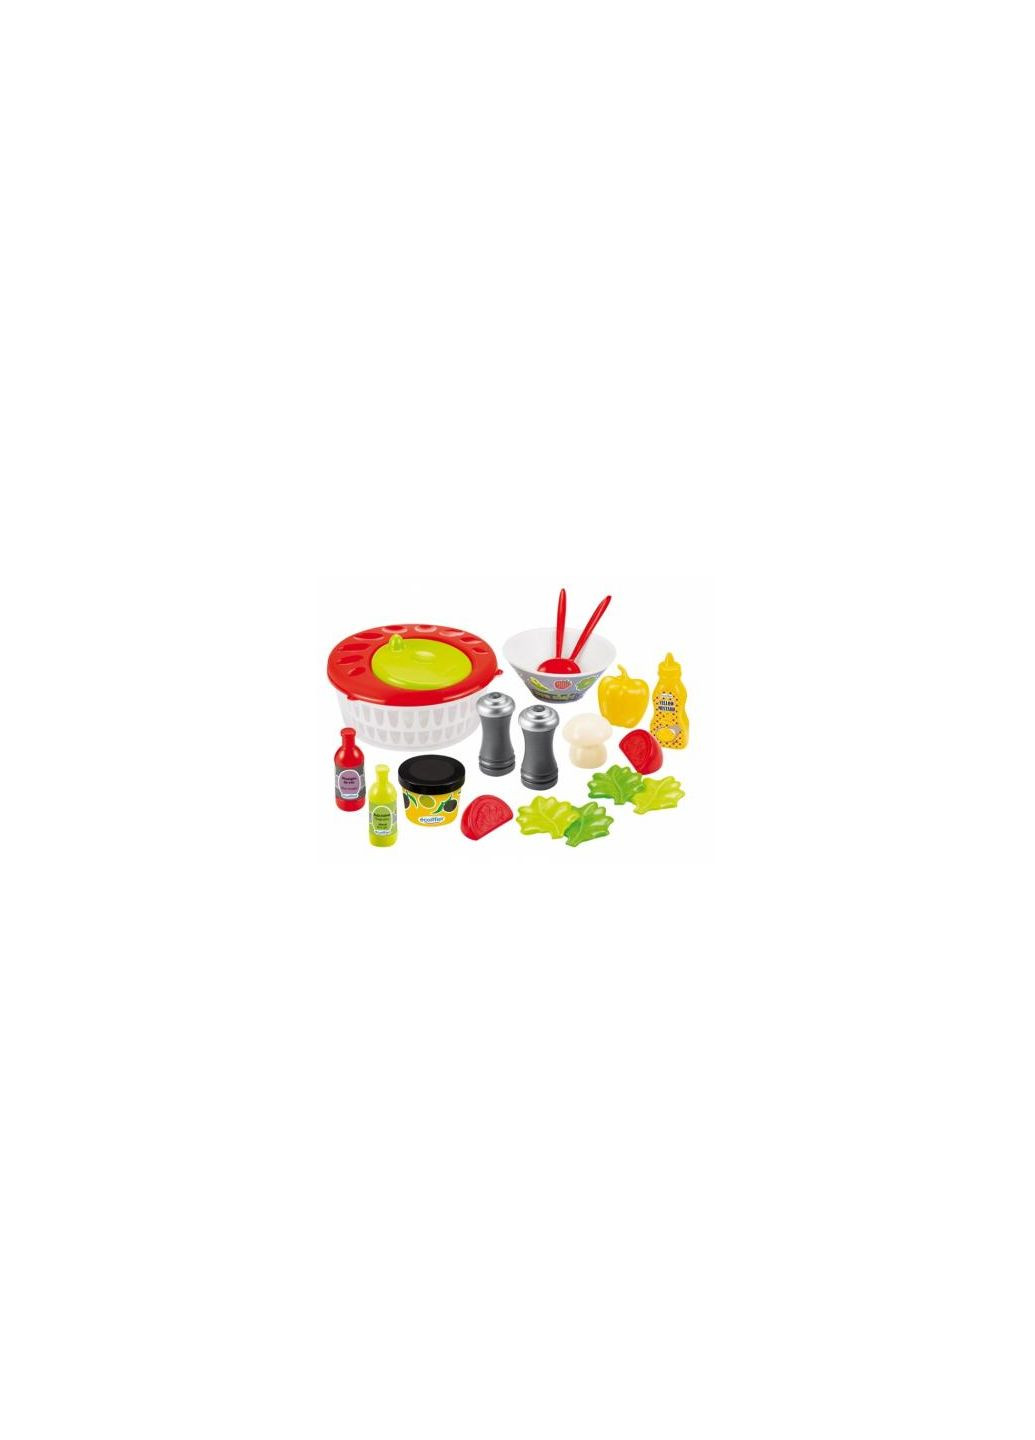 Игровой набор Салат от Шефповара, 21 аксес (002579) Ecoiffier салат от шеф-повара, 21 аксес (275076601)